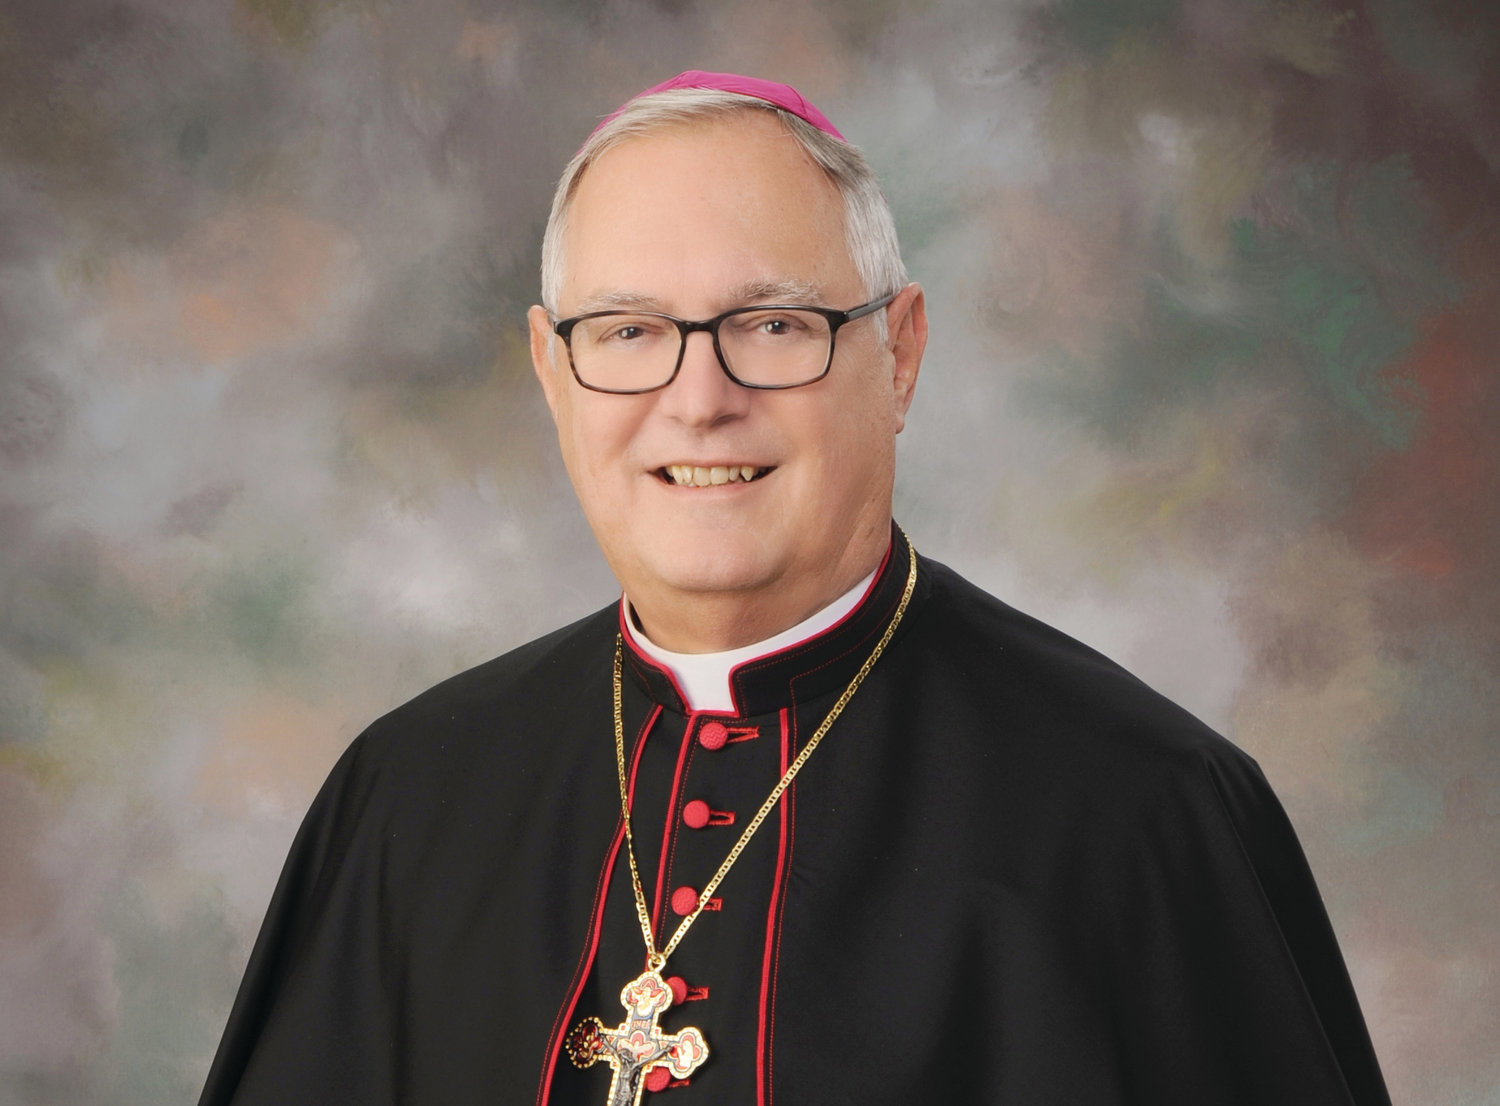 Mensaje de Pascua del obispo Thomas J. Tobin | Rhode Island Catholic